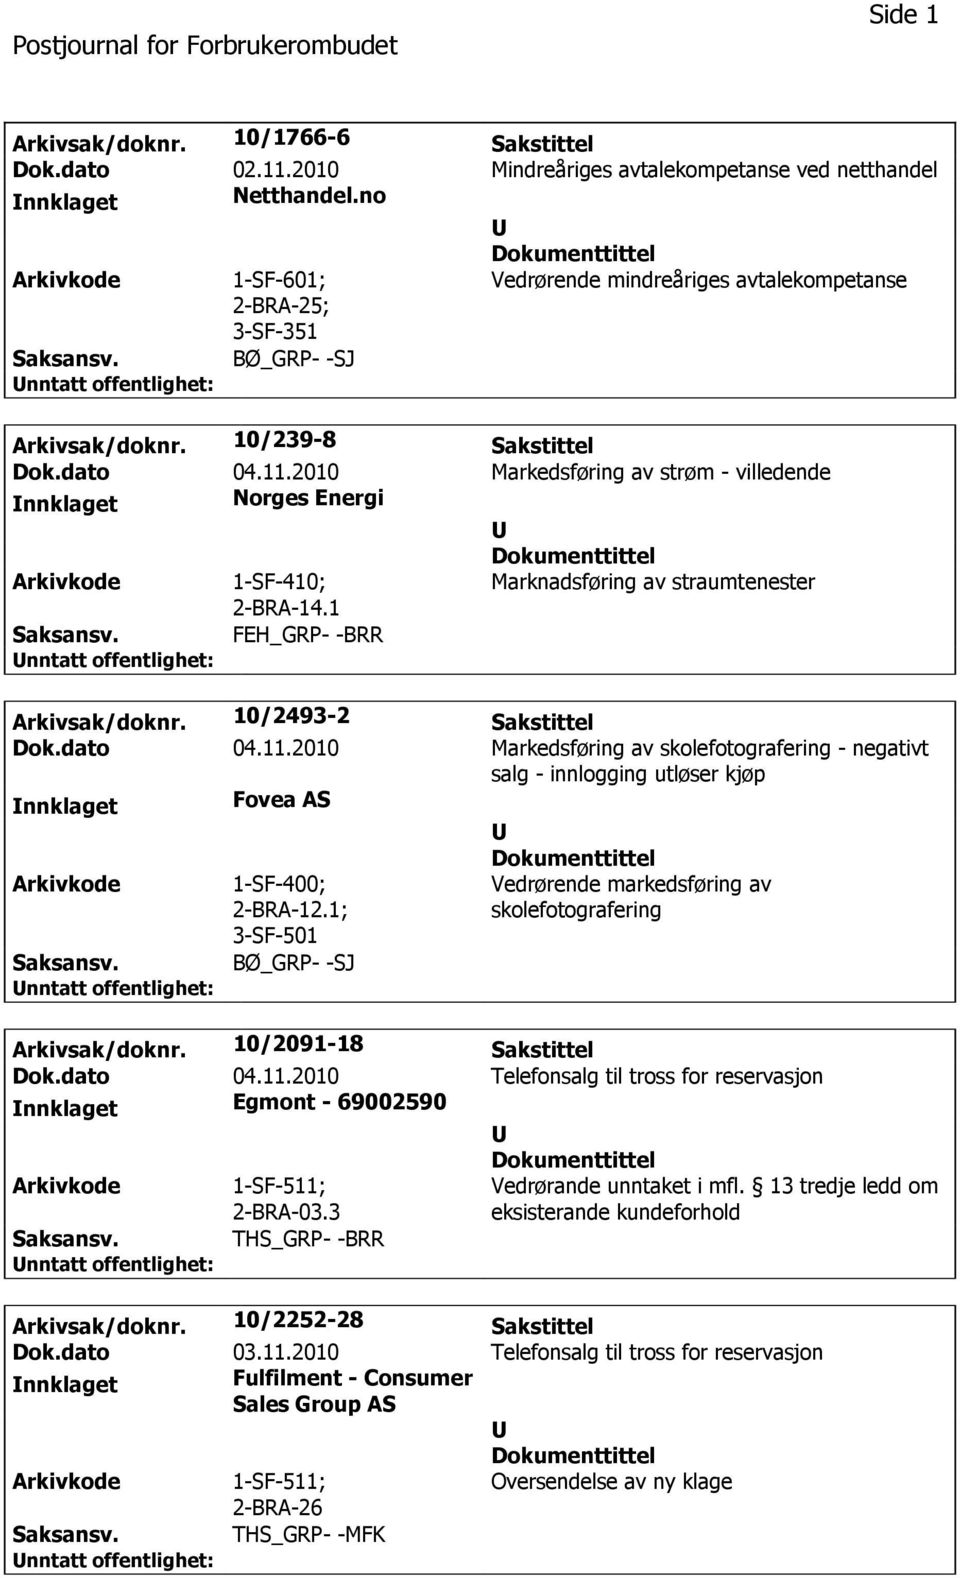 2010 Markedsføring av strøm - villedende Norges Energi Marknadsføring av straumtenester 2-BRA-14.1 Arkivsak/doknr. 10/2493-2 Sakstittel Dok.dato 04.11.